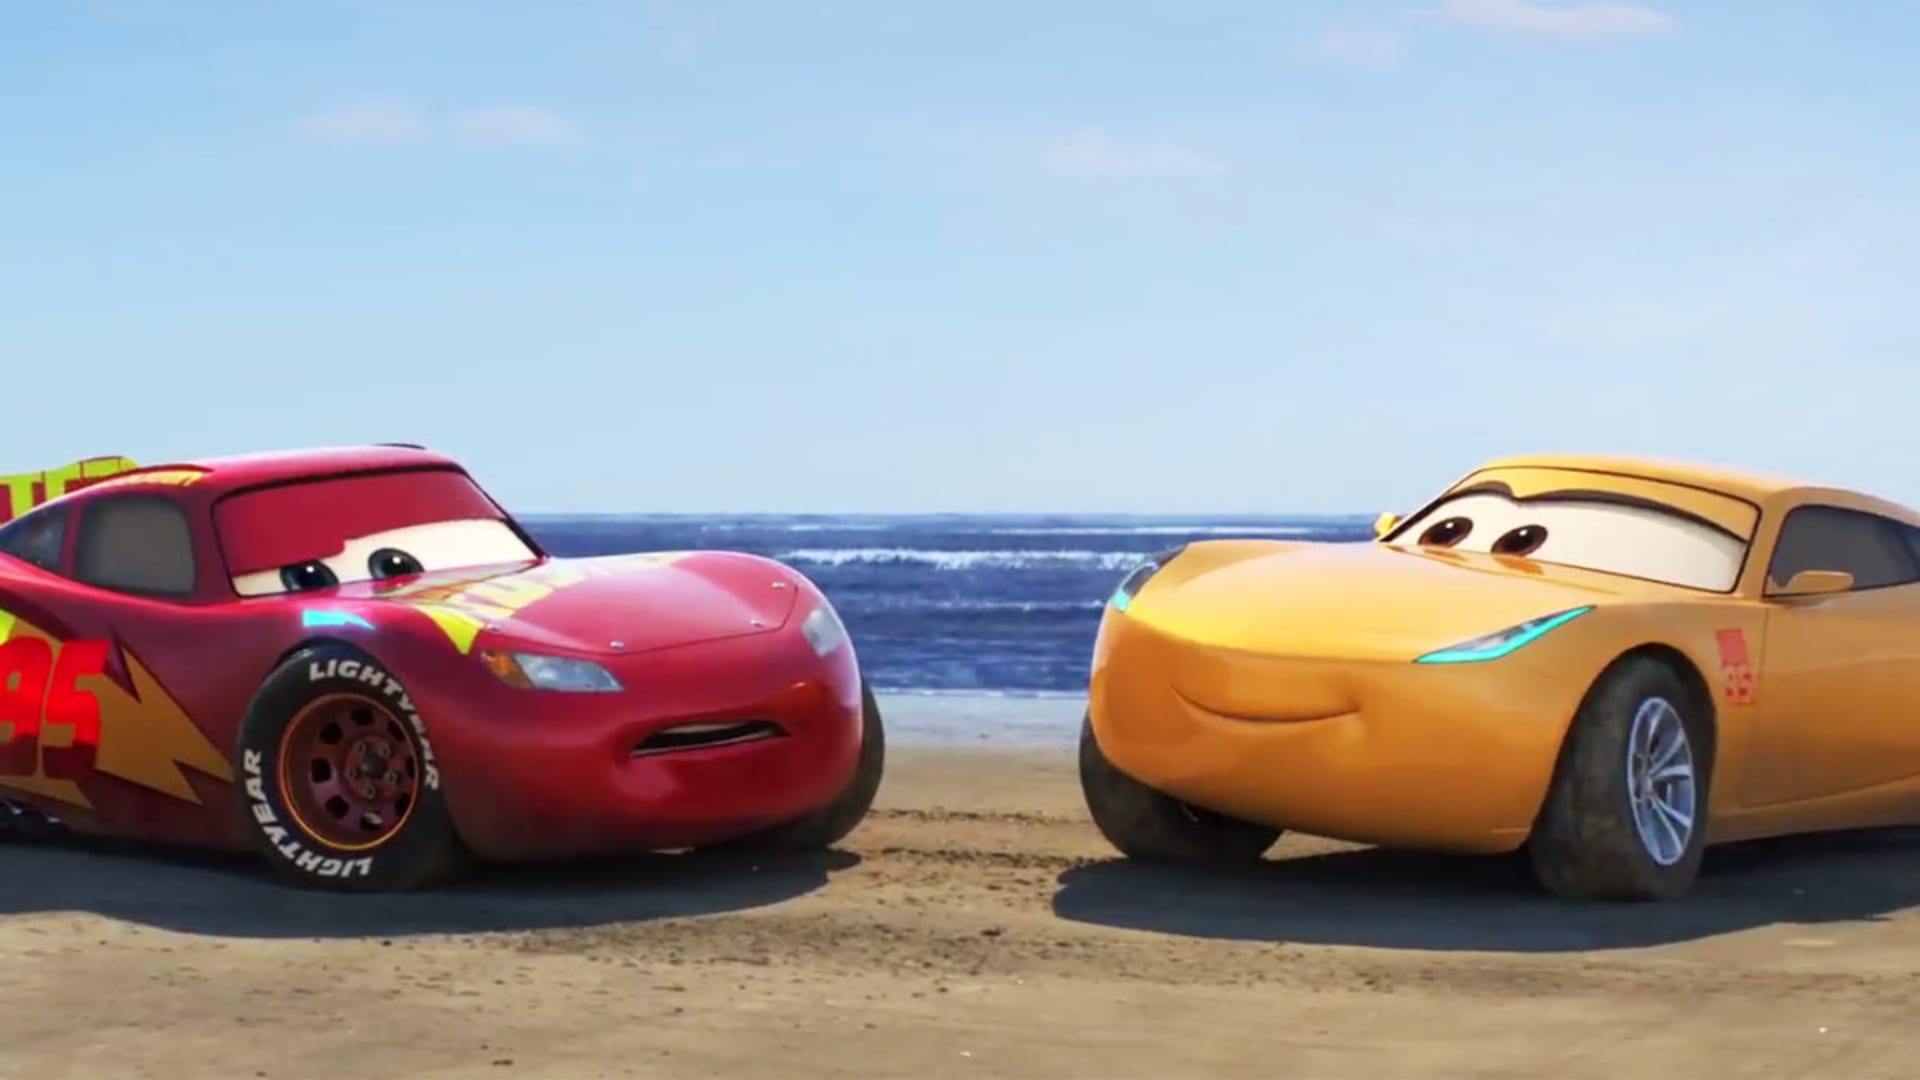 Špičkoví jezdci F1 namluví animák Auta 3 od Pixaru.